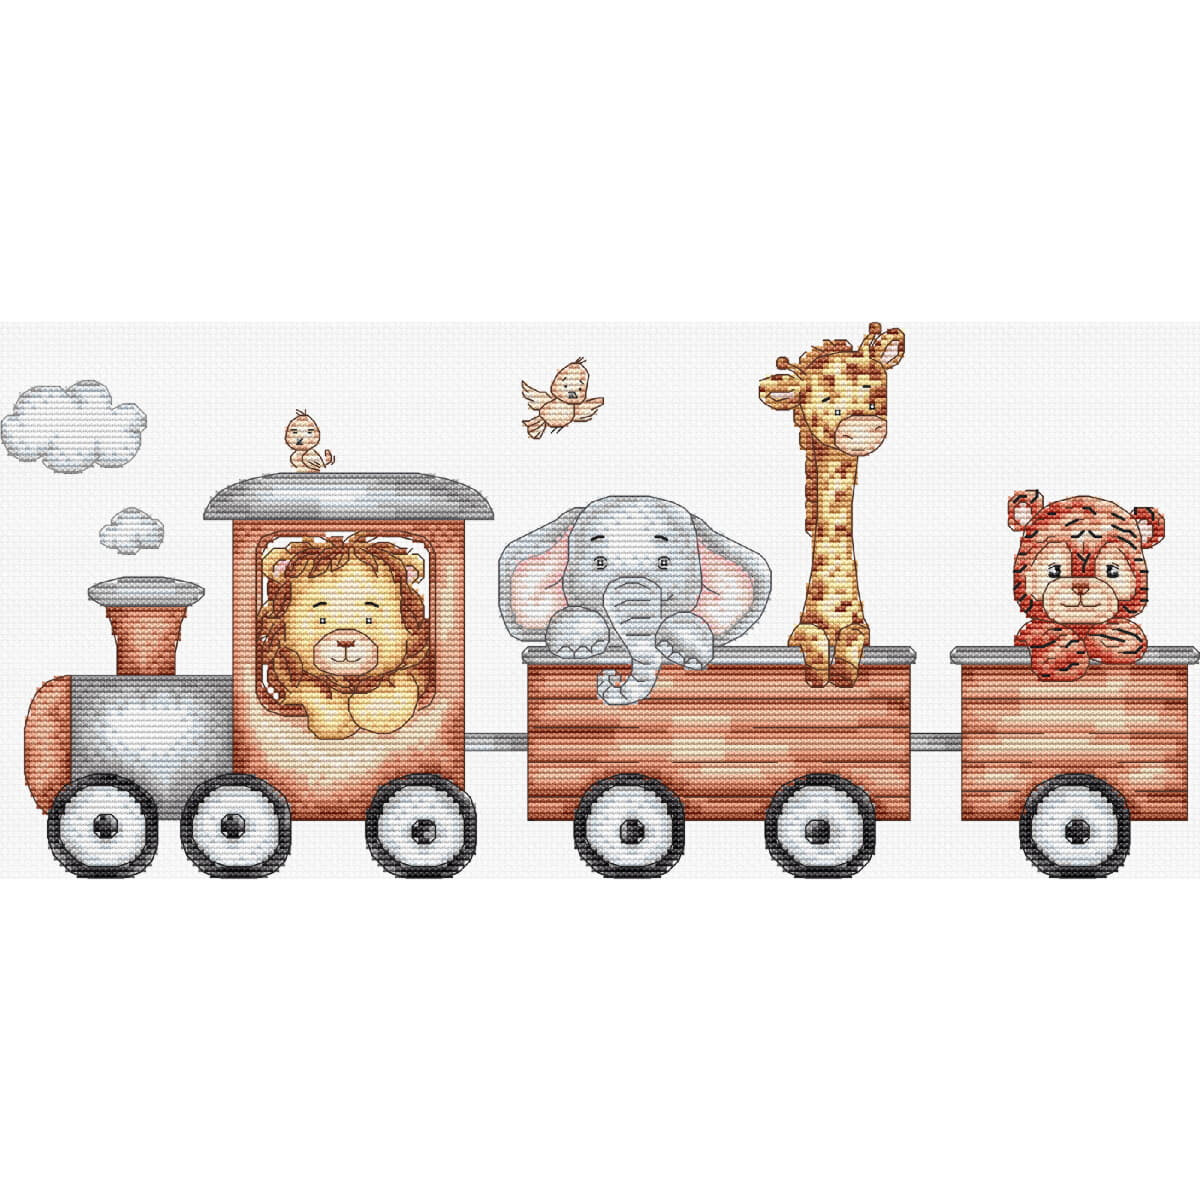 Unincantevole illustrazione di una ferrovia giocattolo...